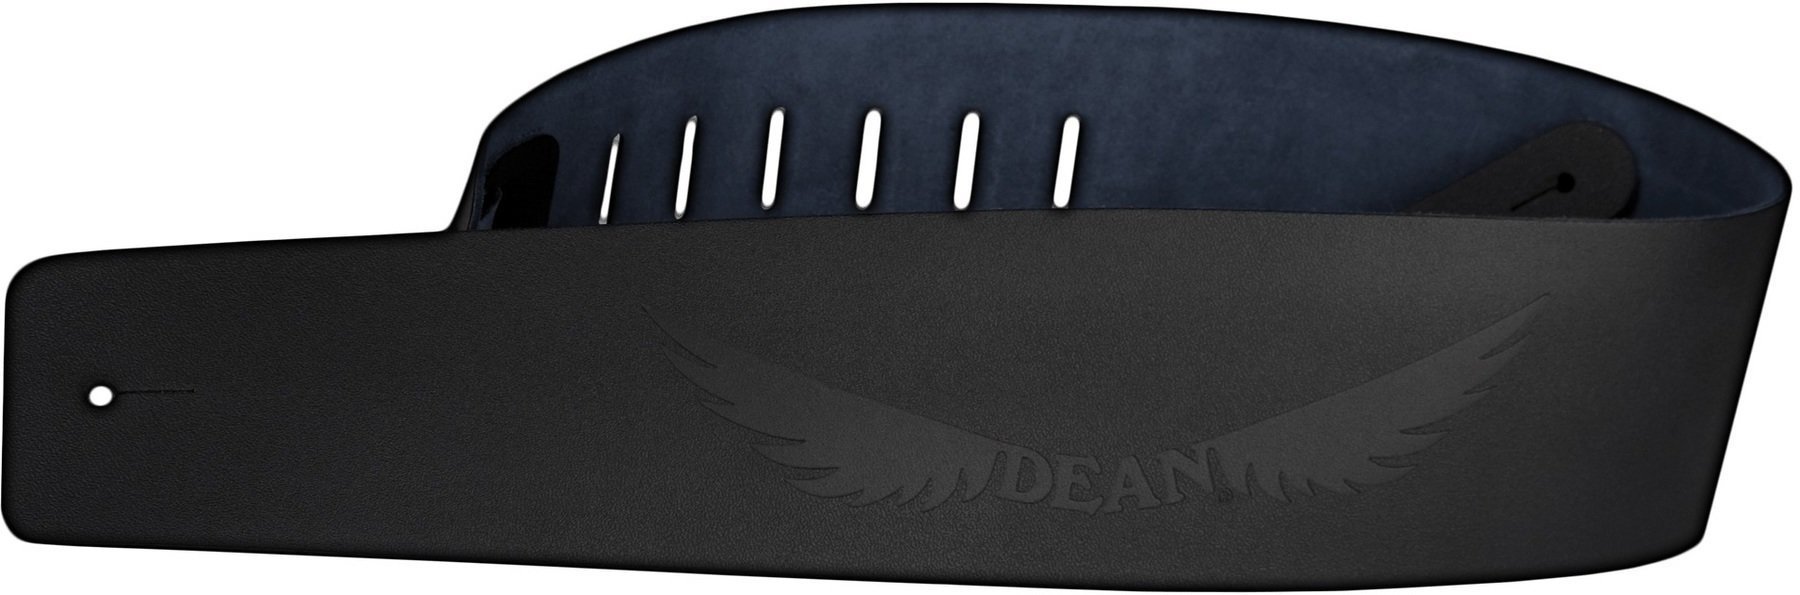 Ζώνη Κιθάρας Dean Guitars Strap Dean Guitar Leather Ζώνη Κιθάρας Engraved